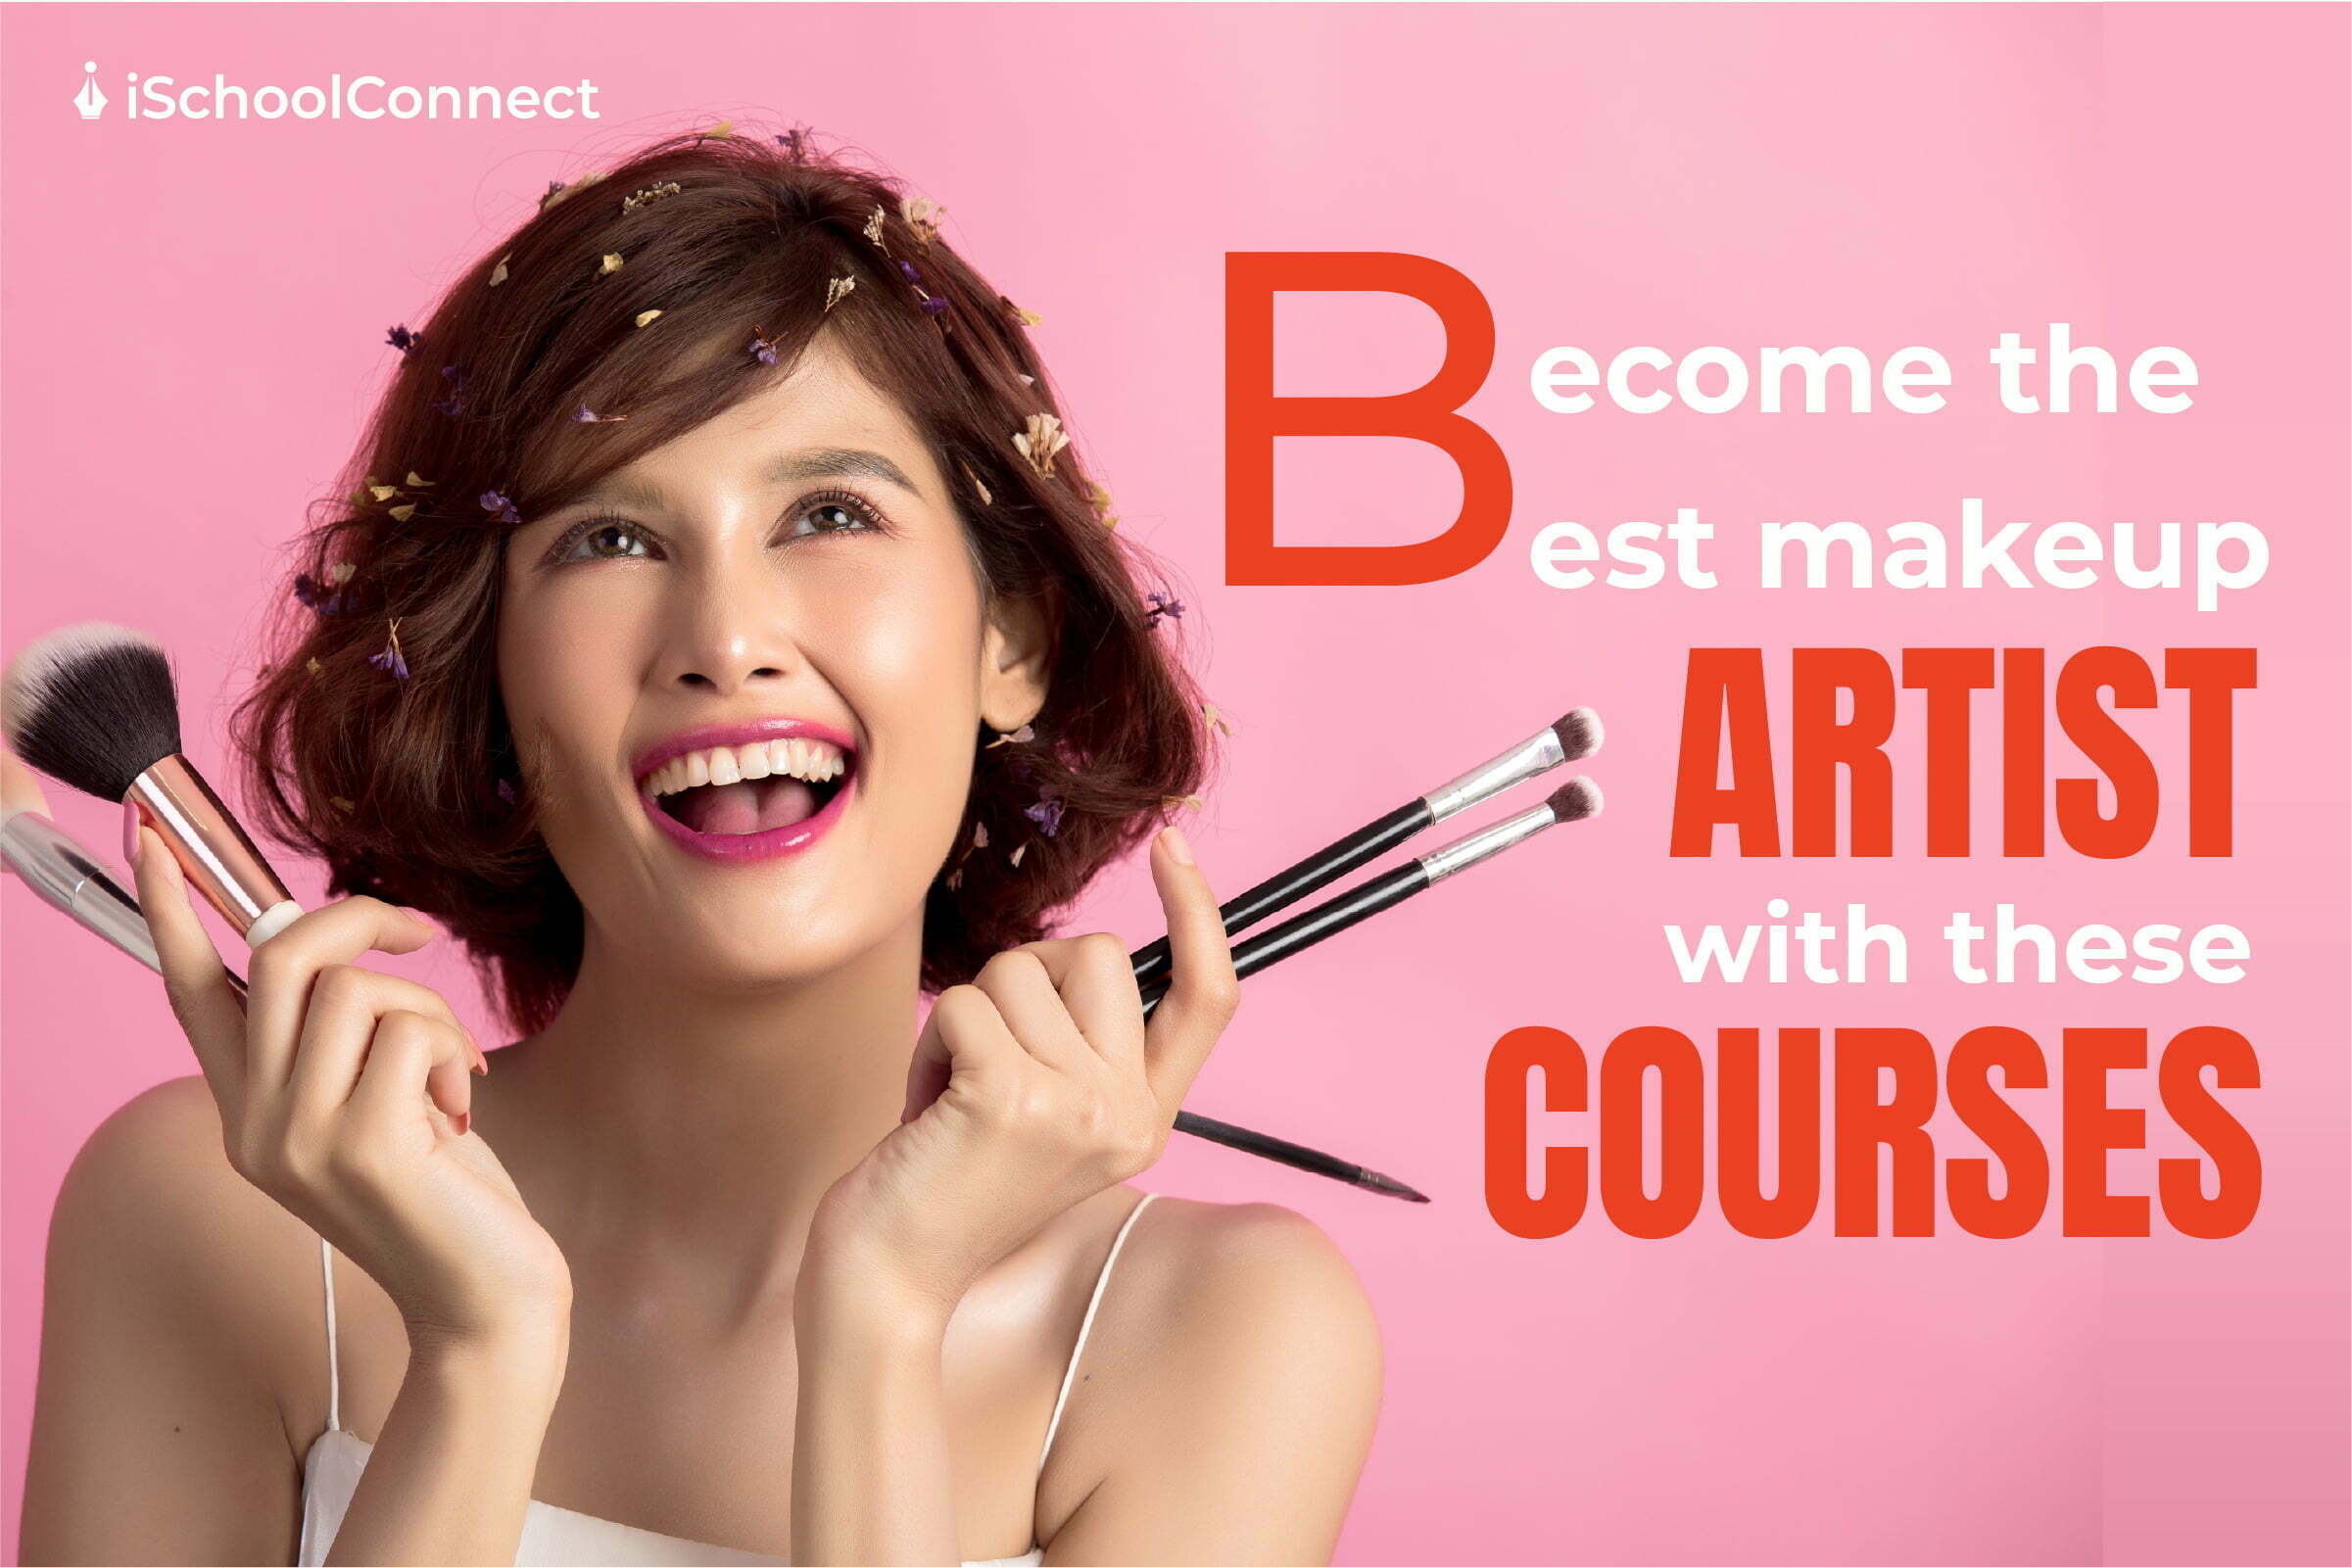 Makeup artist course and makeup artistry as a career